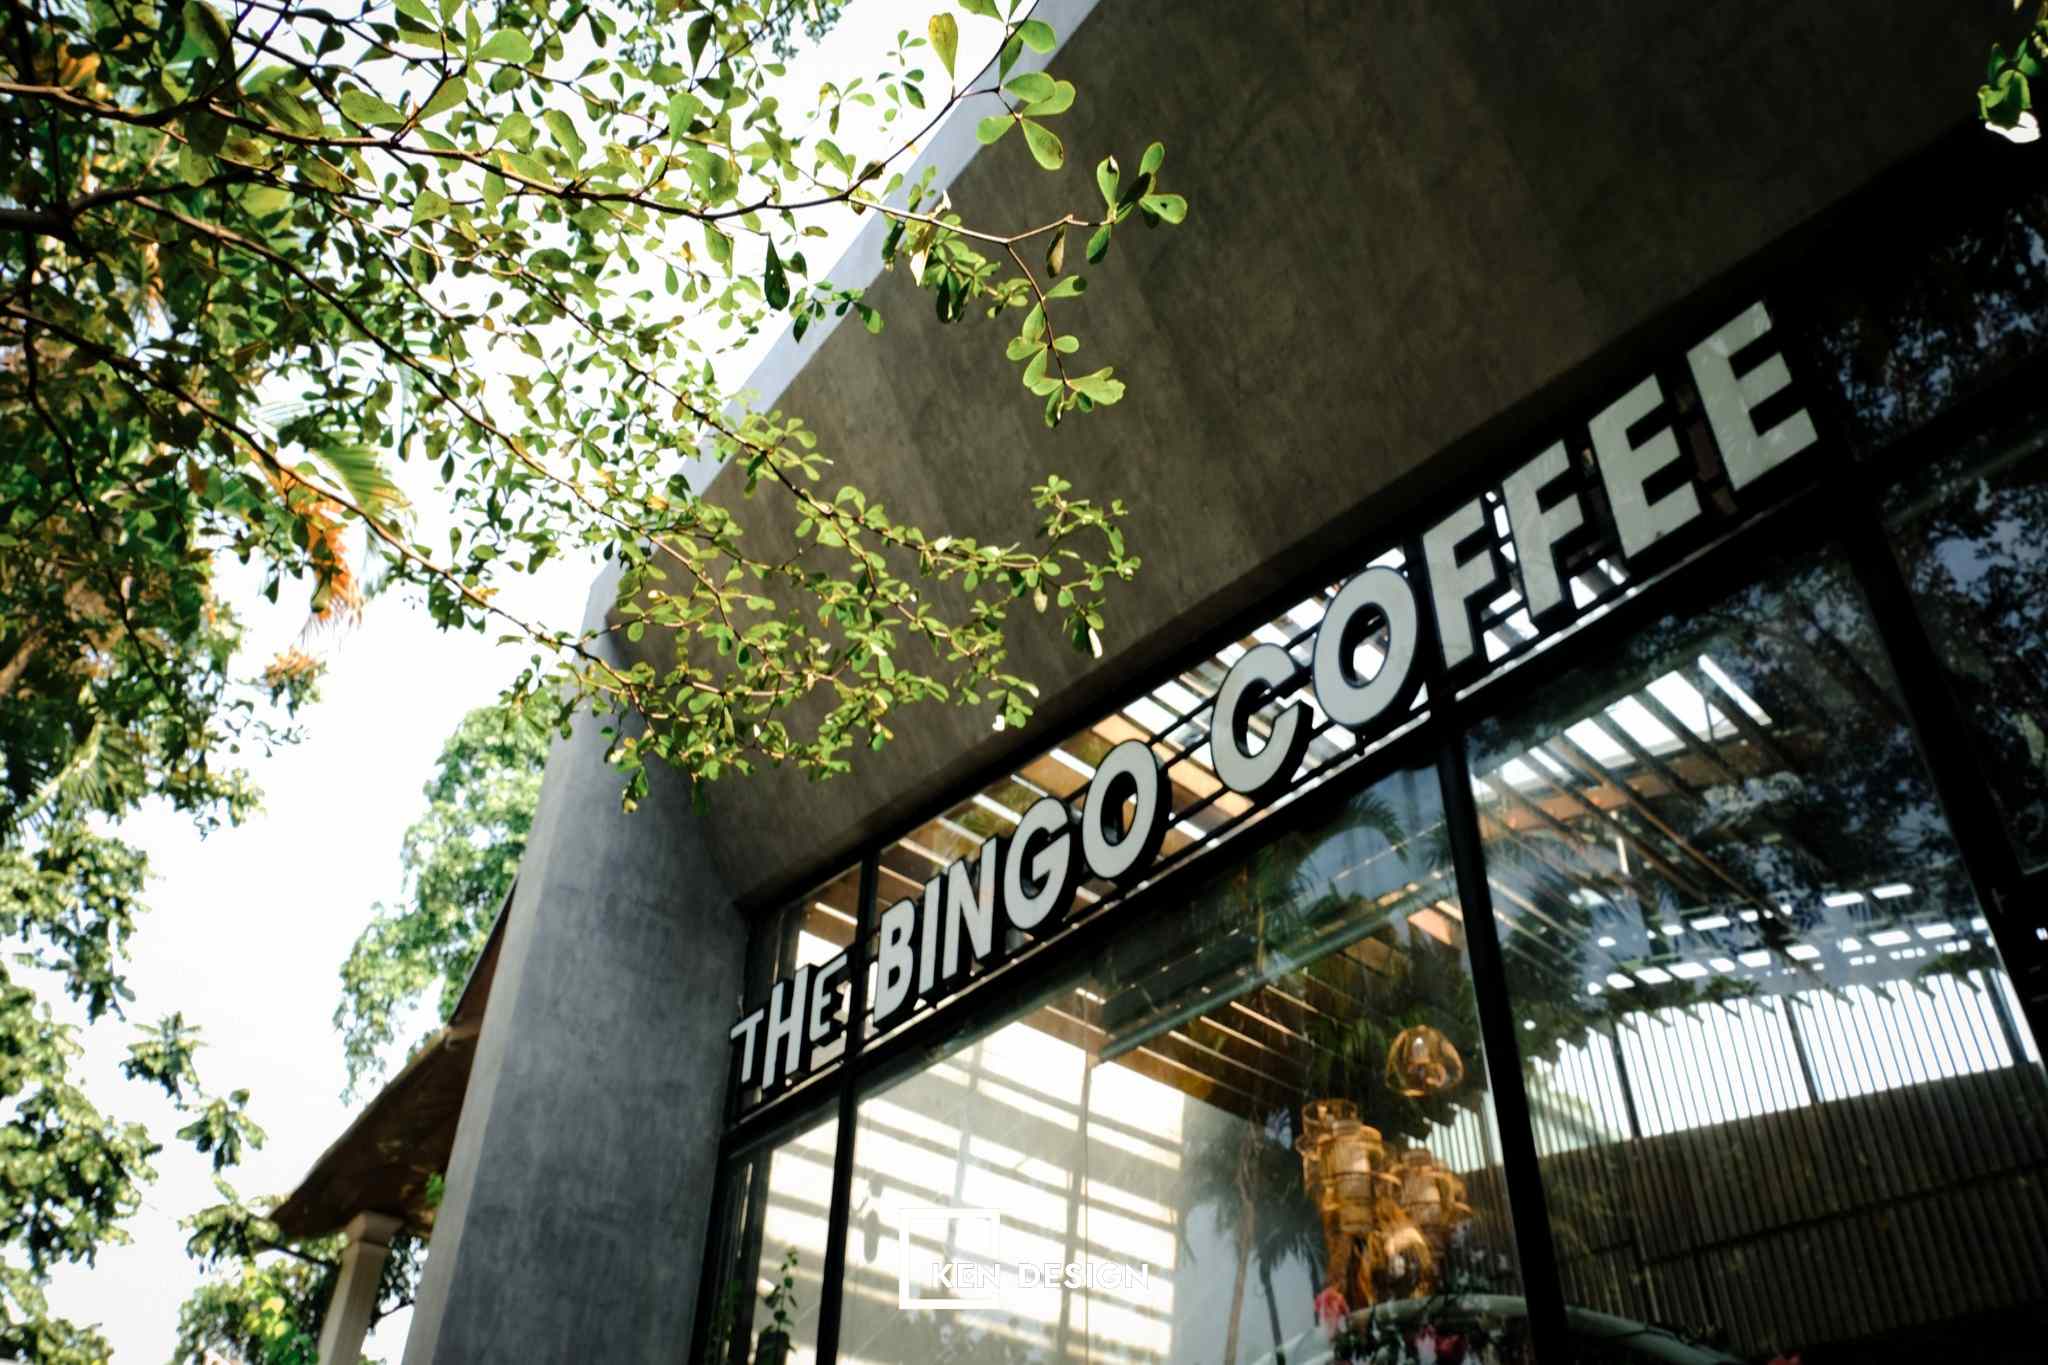 Thiết kế The Bingo Coffee đặc sắc với hệ thống kính trần nhiều ánh sáng